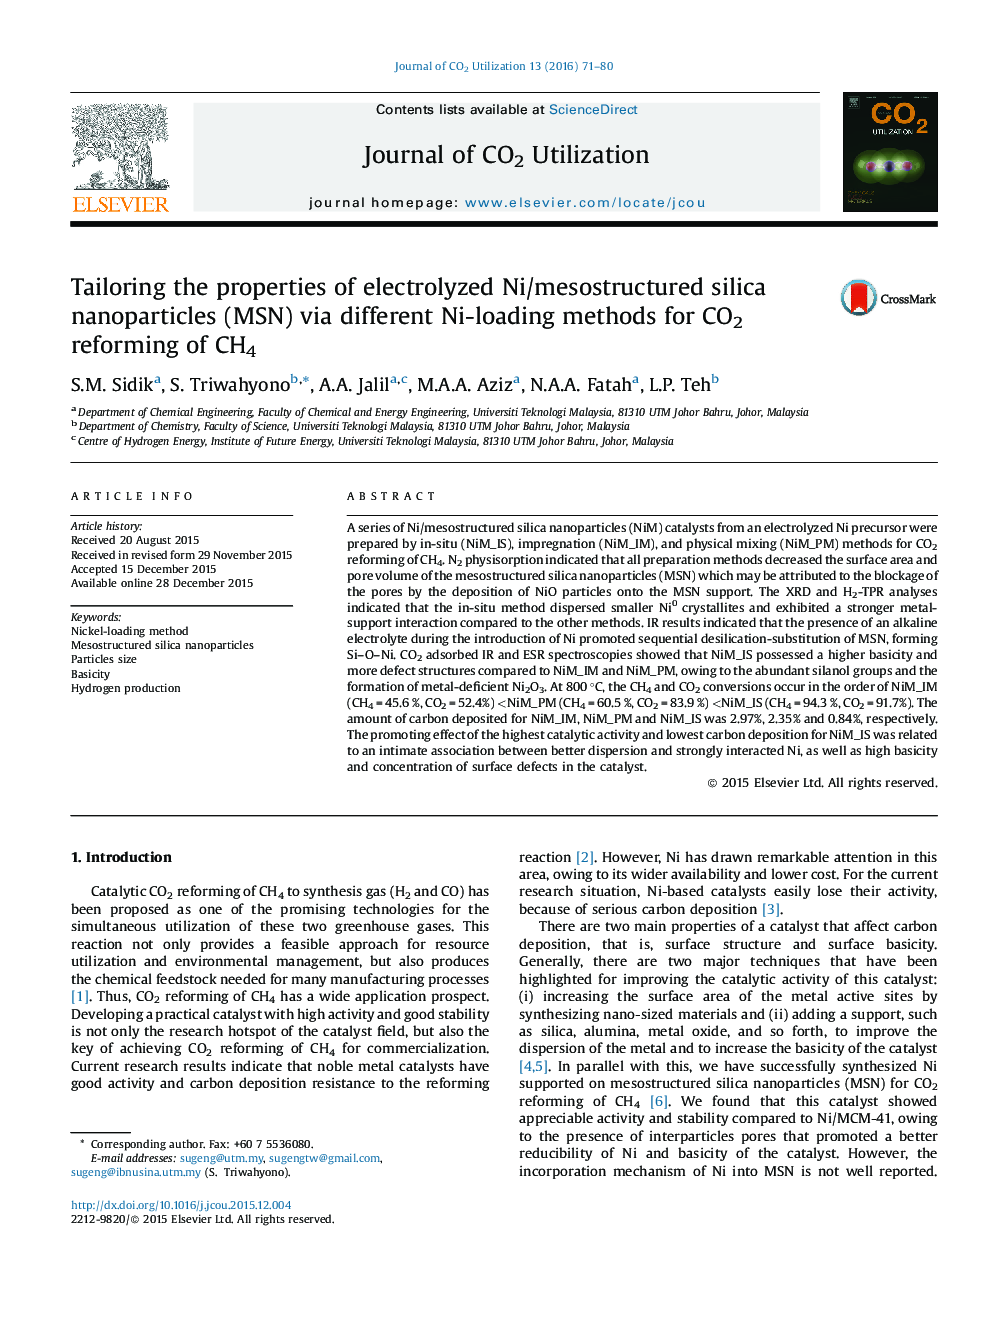 متناسب سازی خواص نانوذرات سیلیکای الکترولیز شده Ni/mesostructured (MSN) با استفاده از روش های مختلف بارگذاری Ni برای اصلاح CO2 CH4